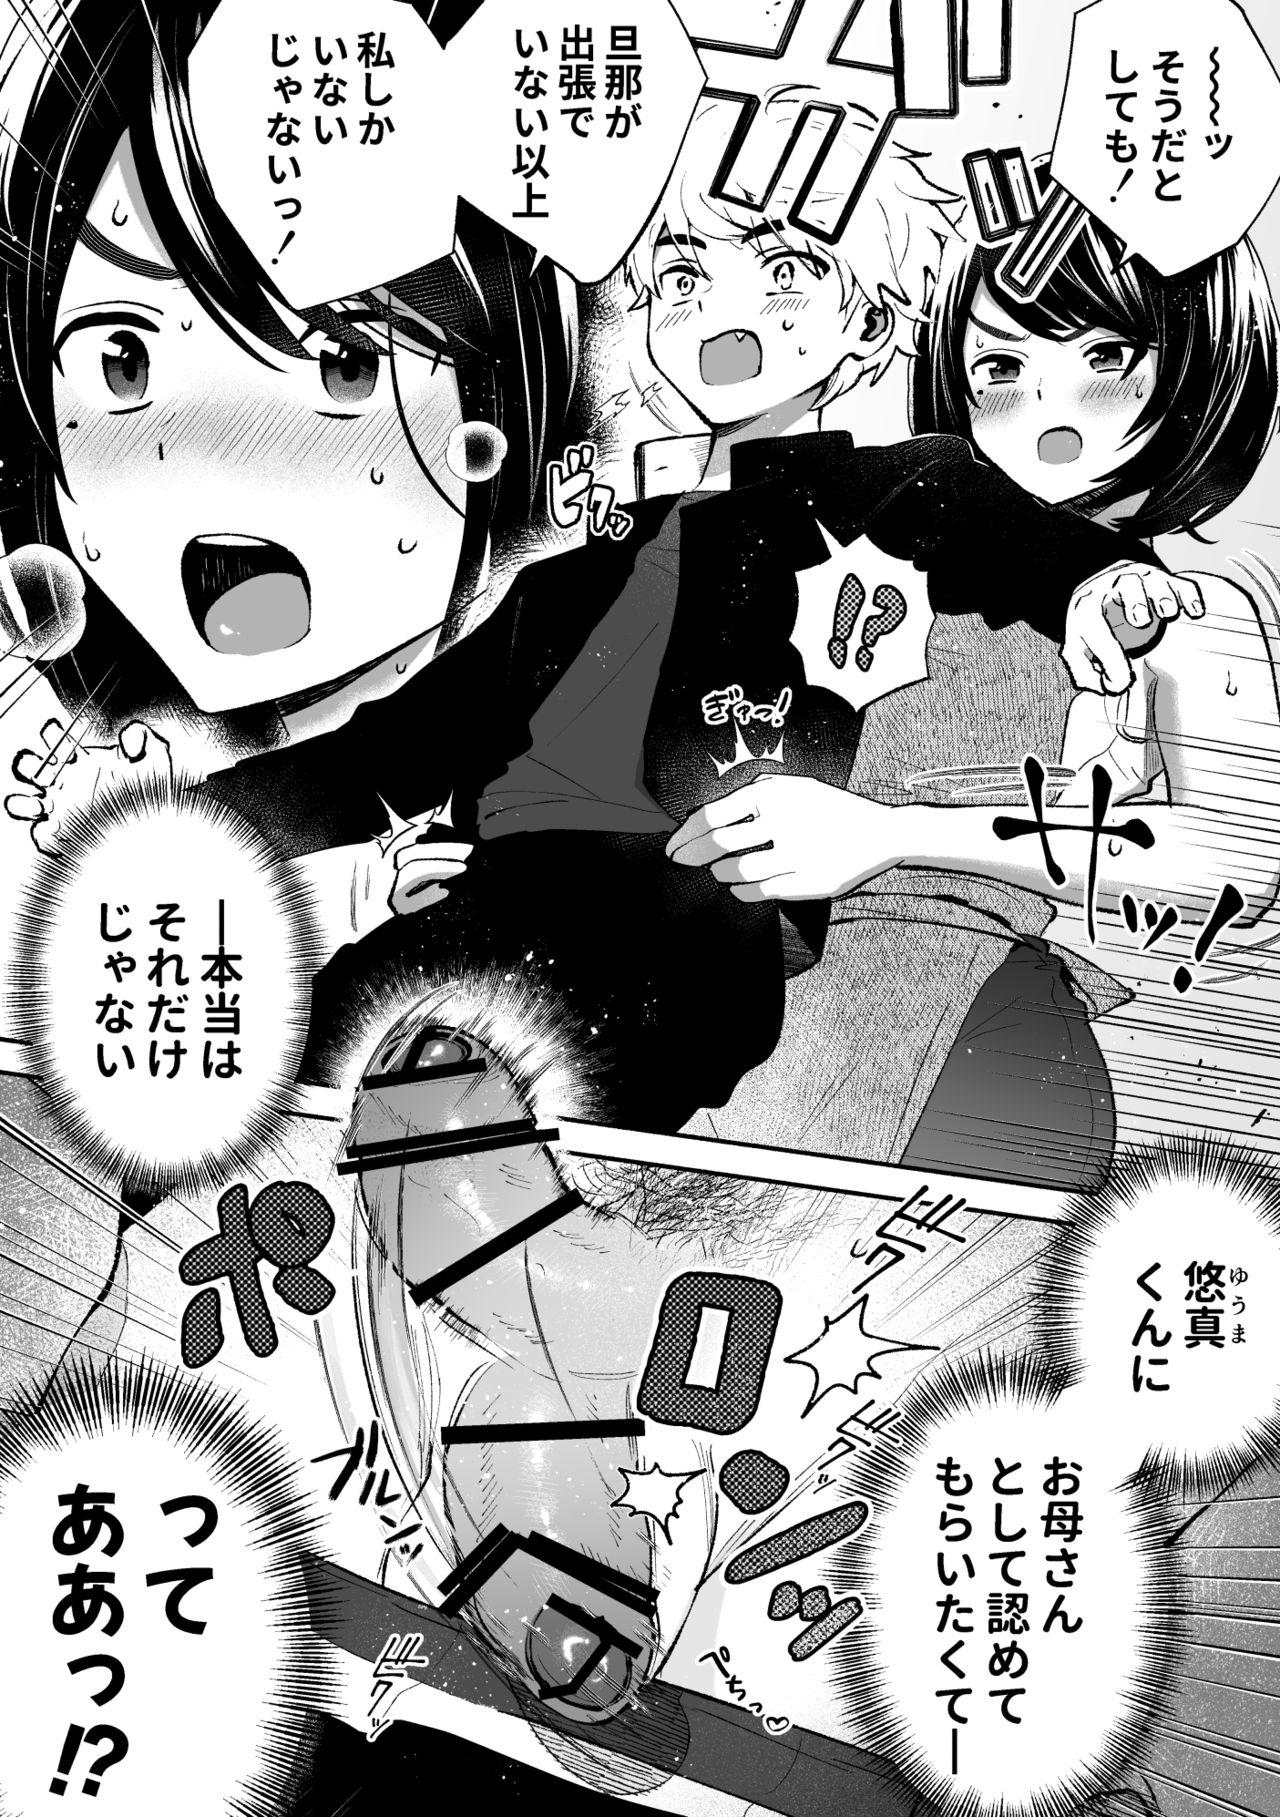 Passionate Houkei da to Gakkou Sotsugyou Dekinai Houritsu nano de Wakai Okaa-san ga Musuko no Chinpo o Muite mita. - Original Room - Page 6